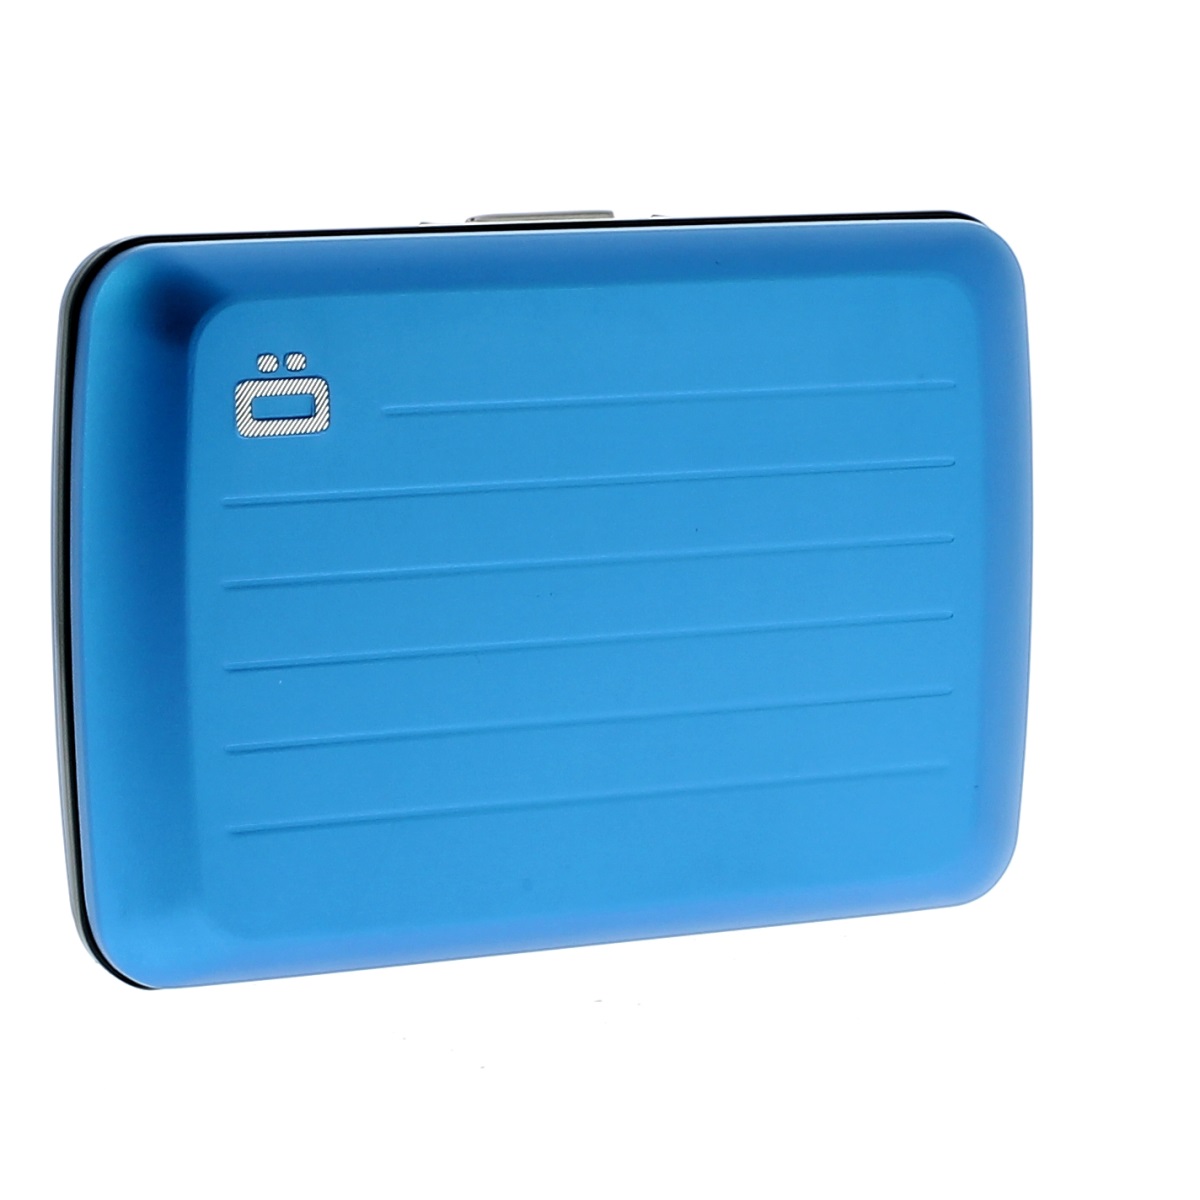 OGON Aluminum Wallet Water Resistant V2.0 - Blue